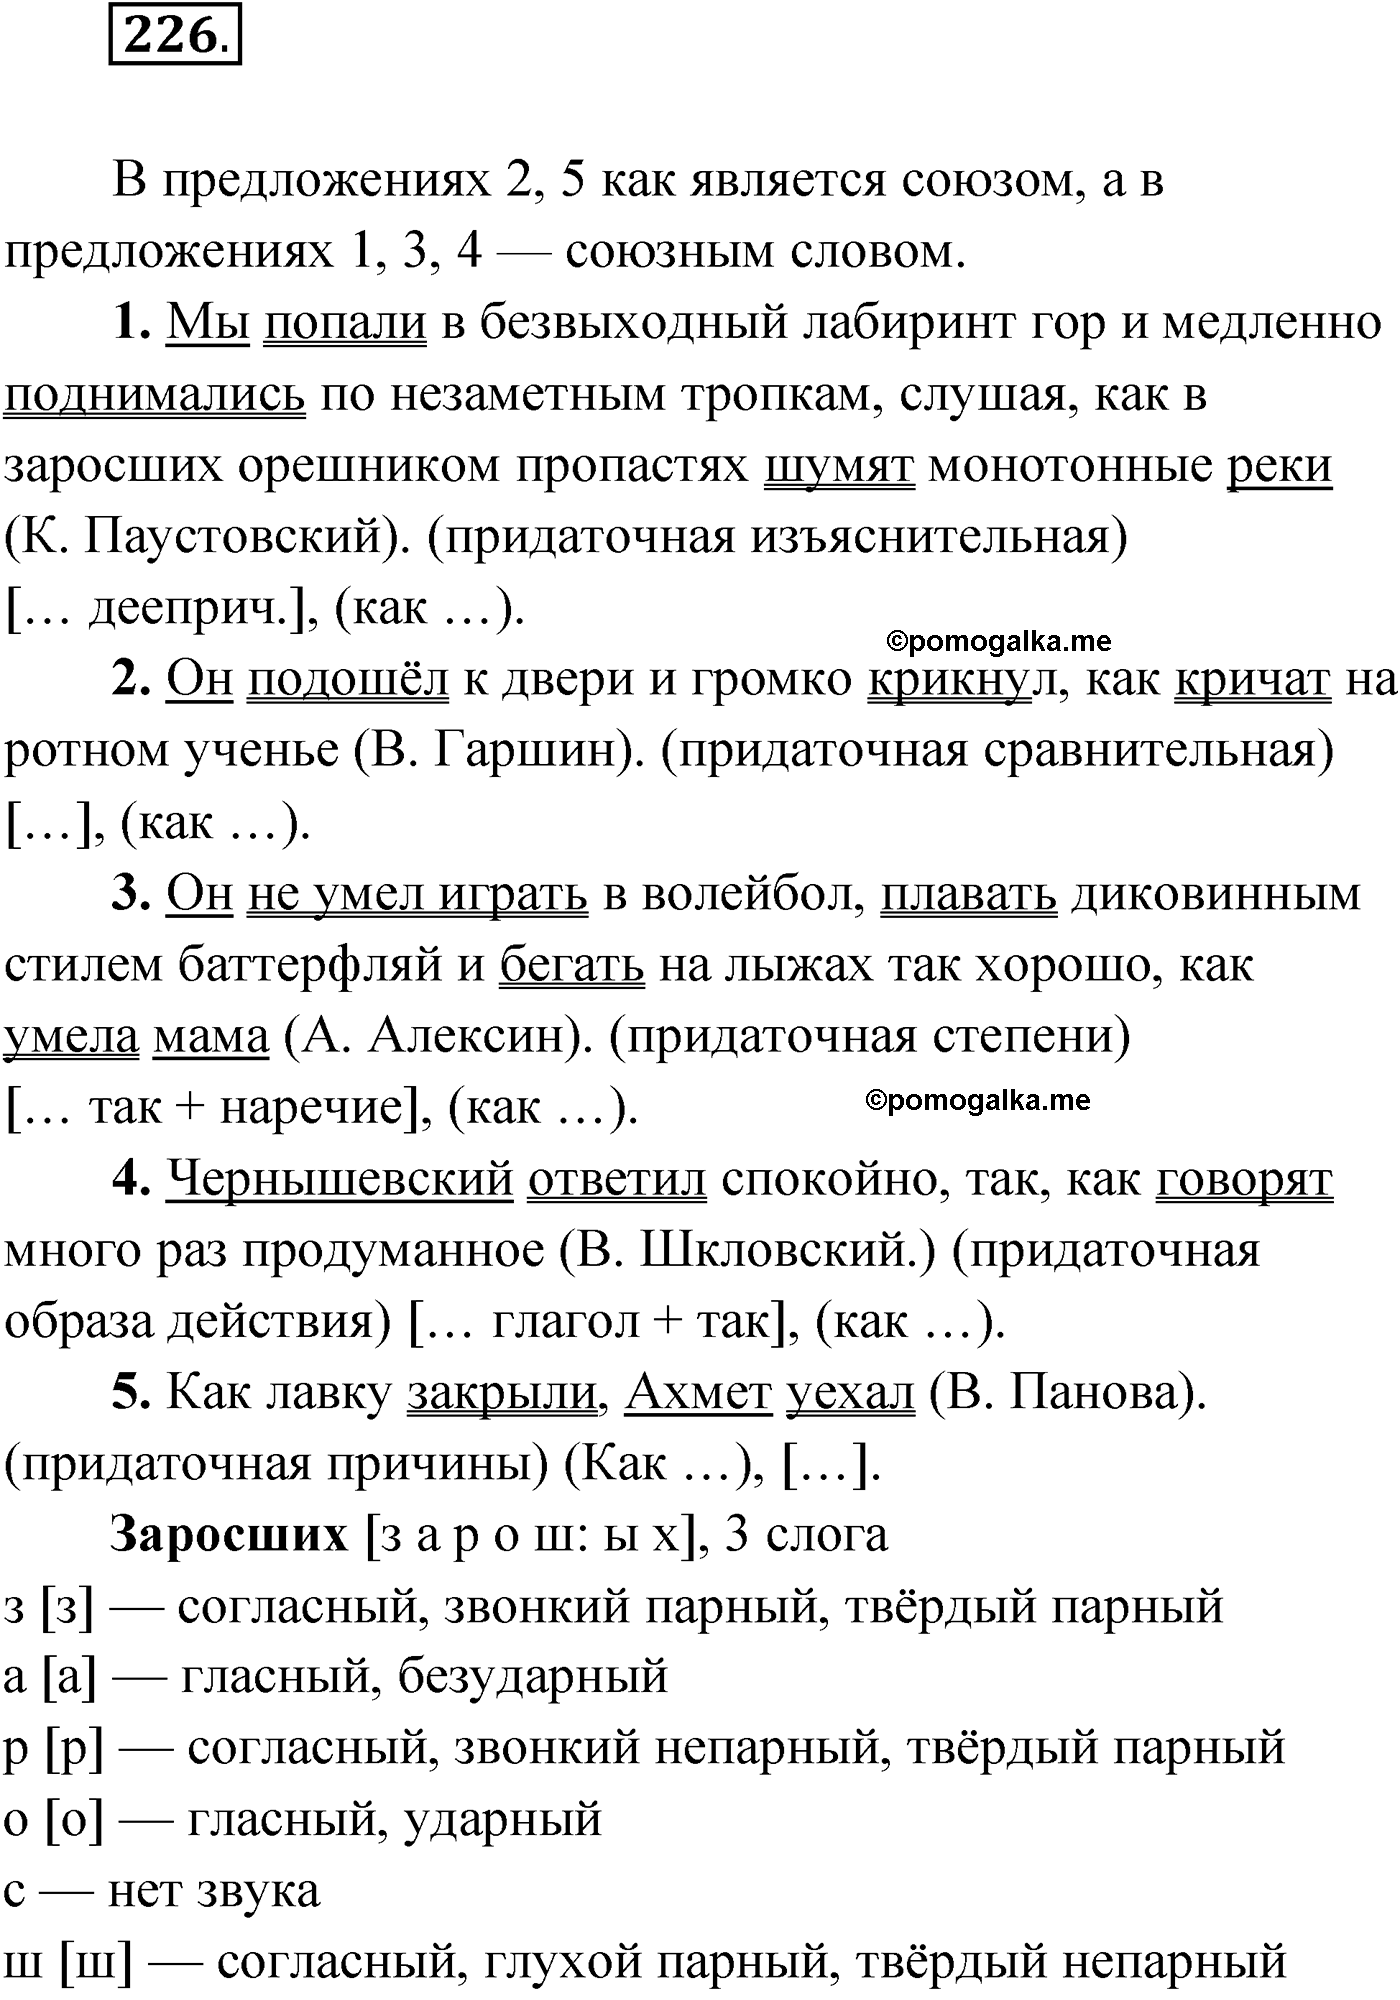 упражнение №226 русский язык 9 класс Мурина 2019 год